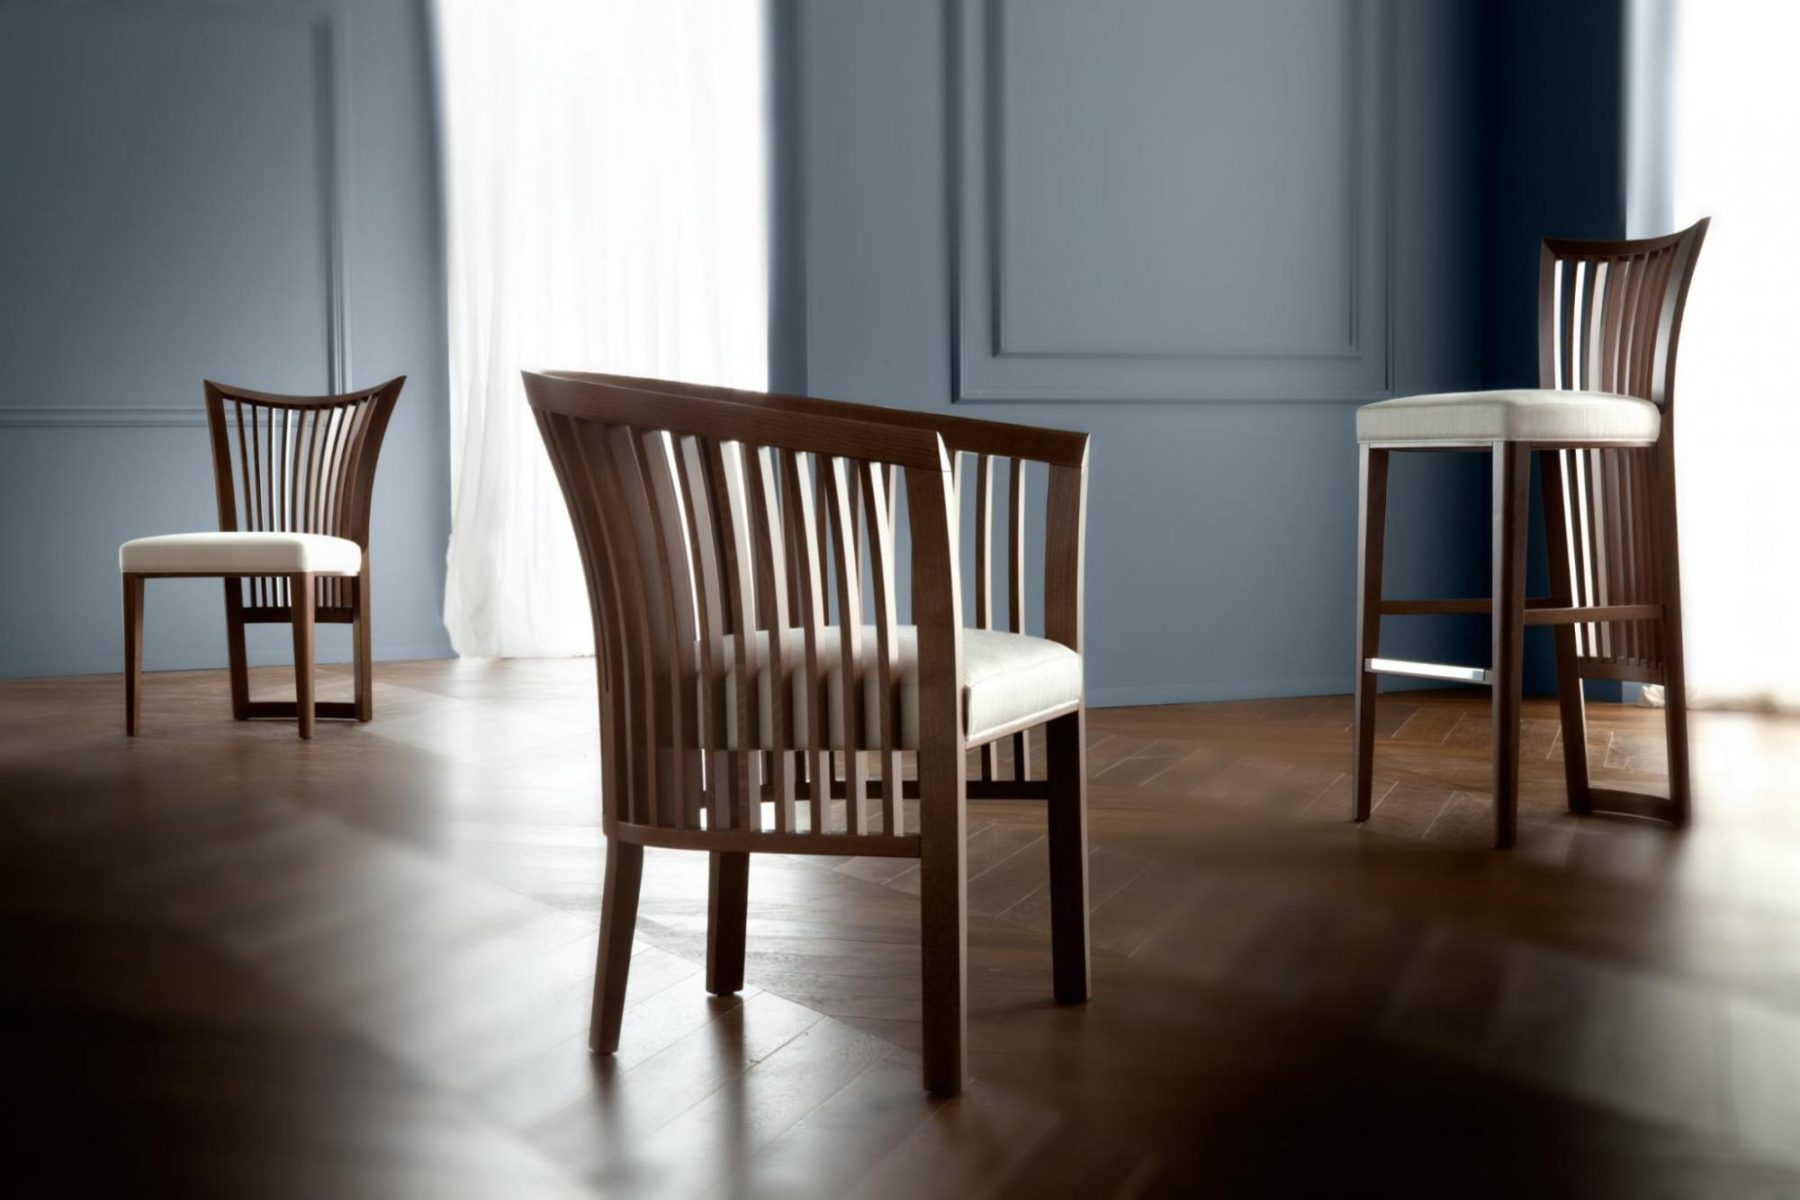 意大利家具costantinipietro的chairs-ALLUSION 餐椅 细节图